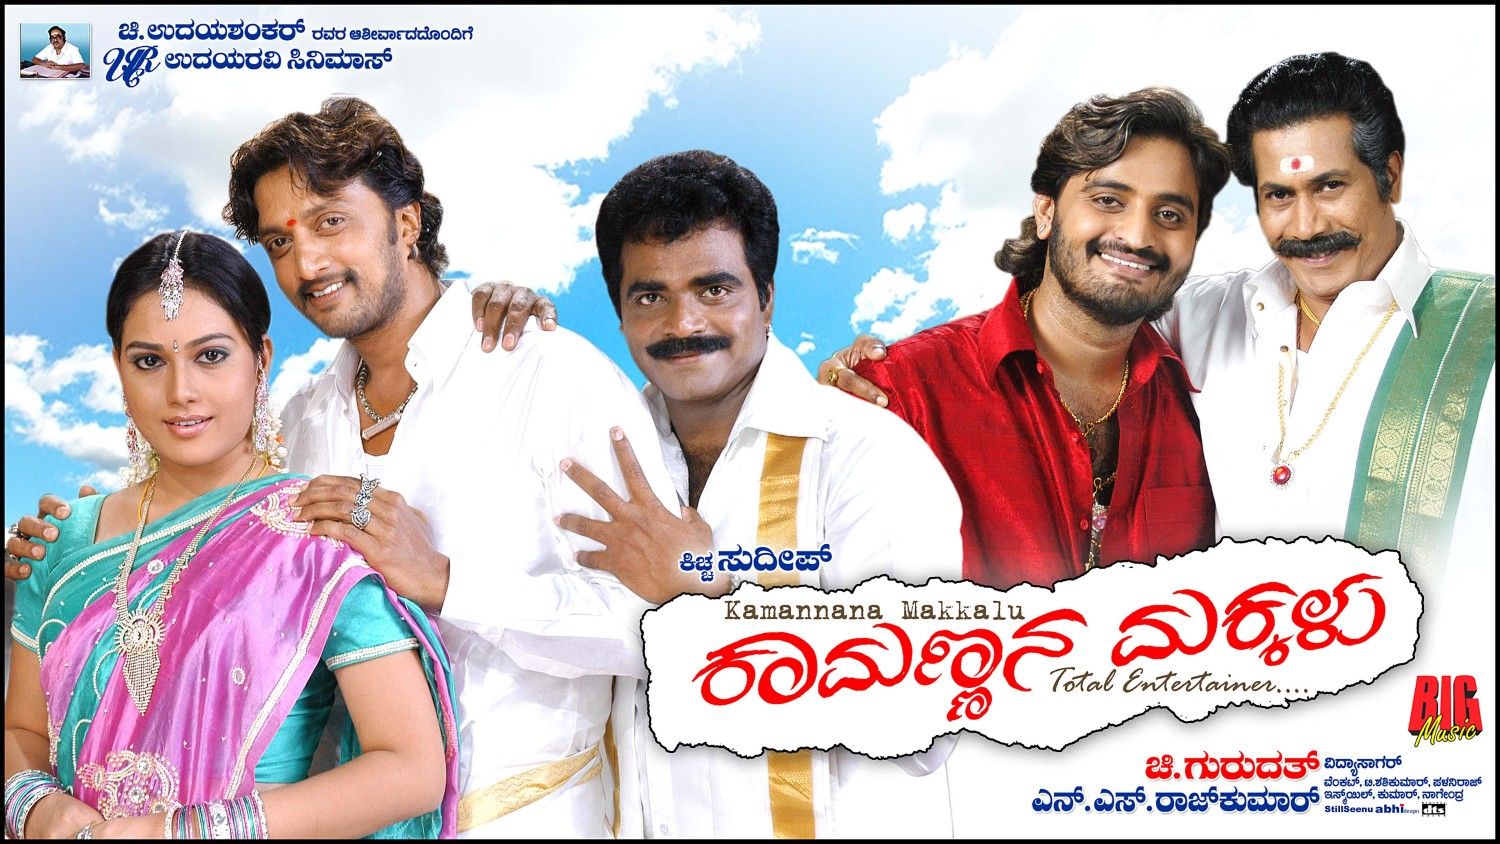 Extra Large Movie Poster Image for Kamannana Makkalu (#12 of 17)